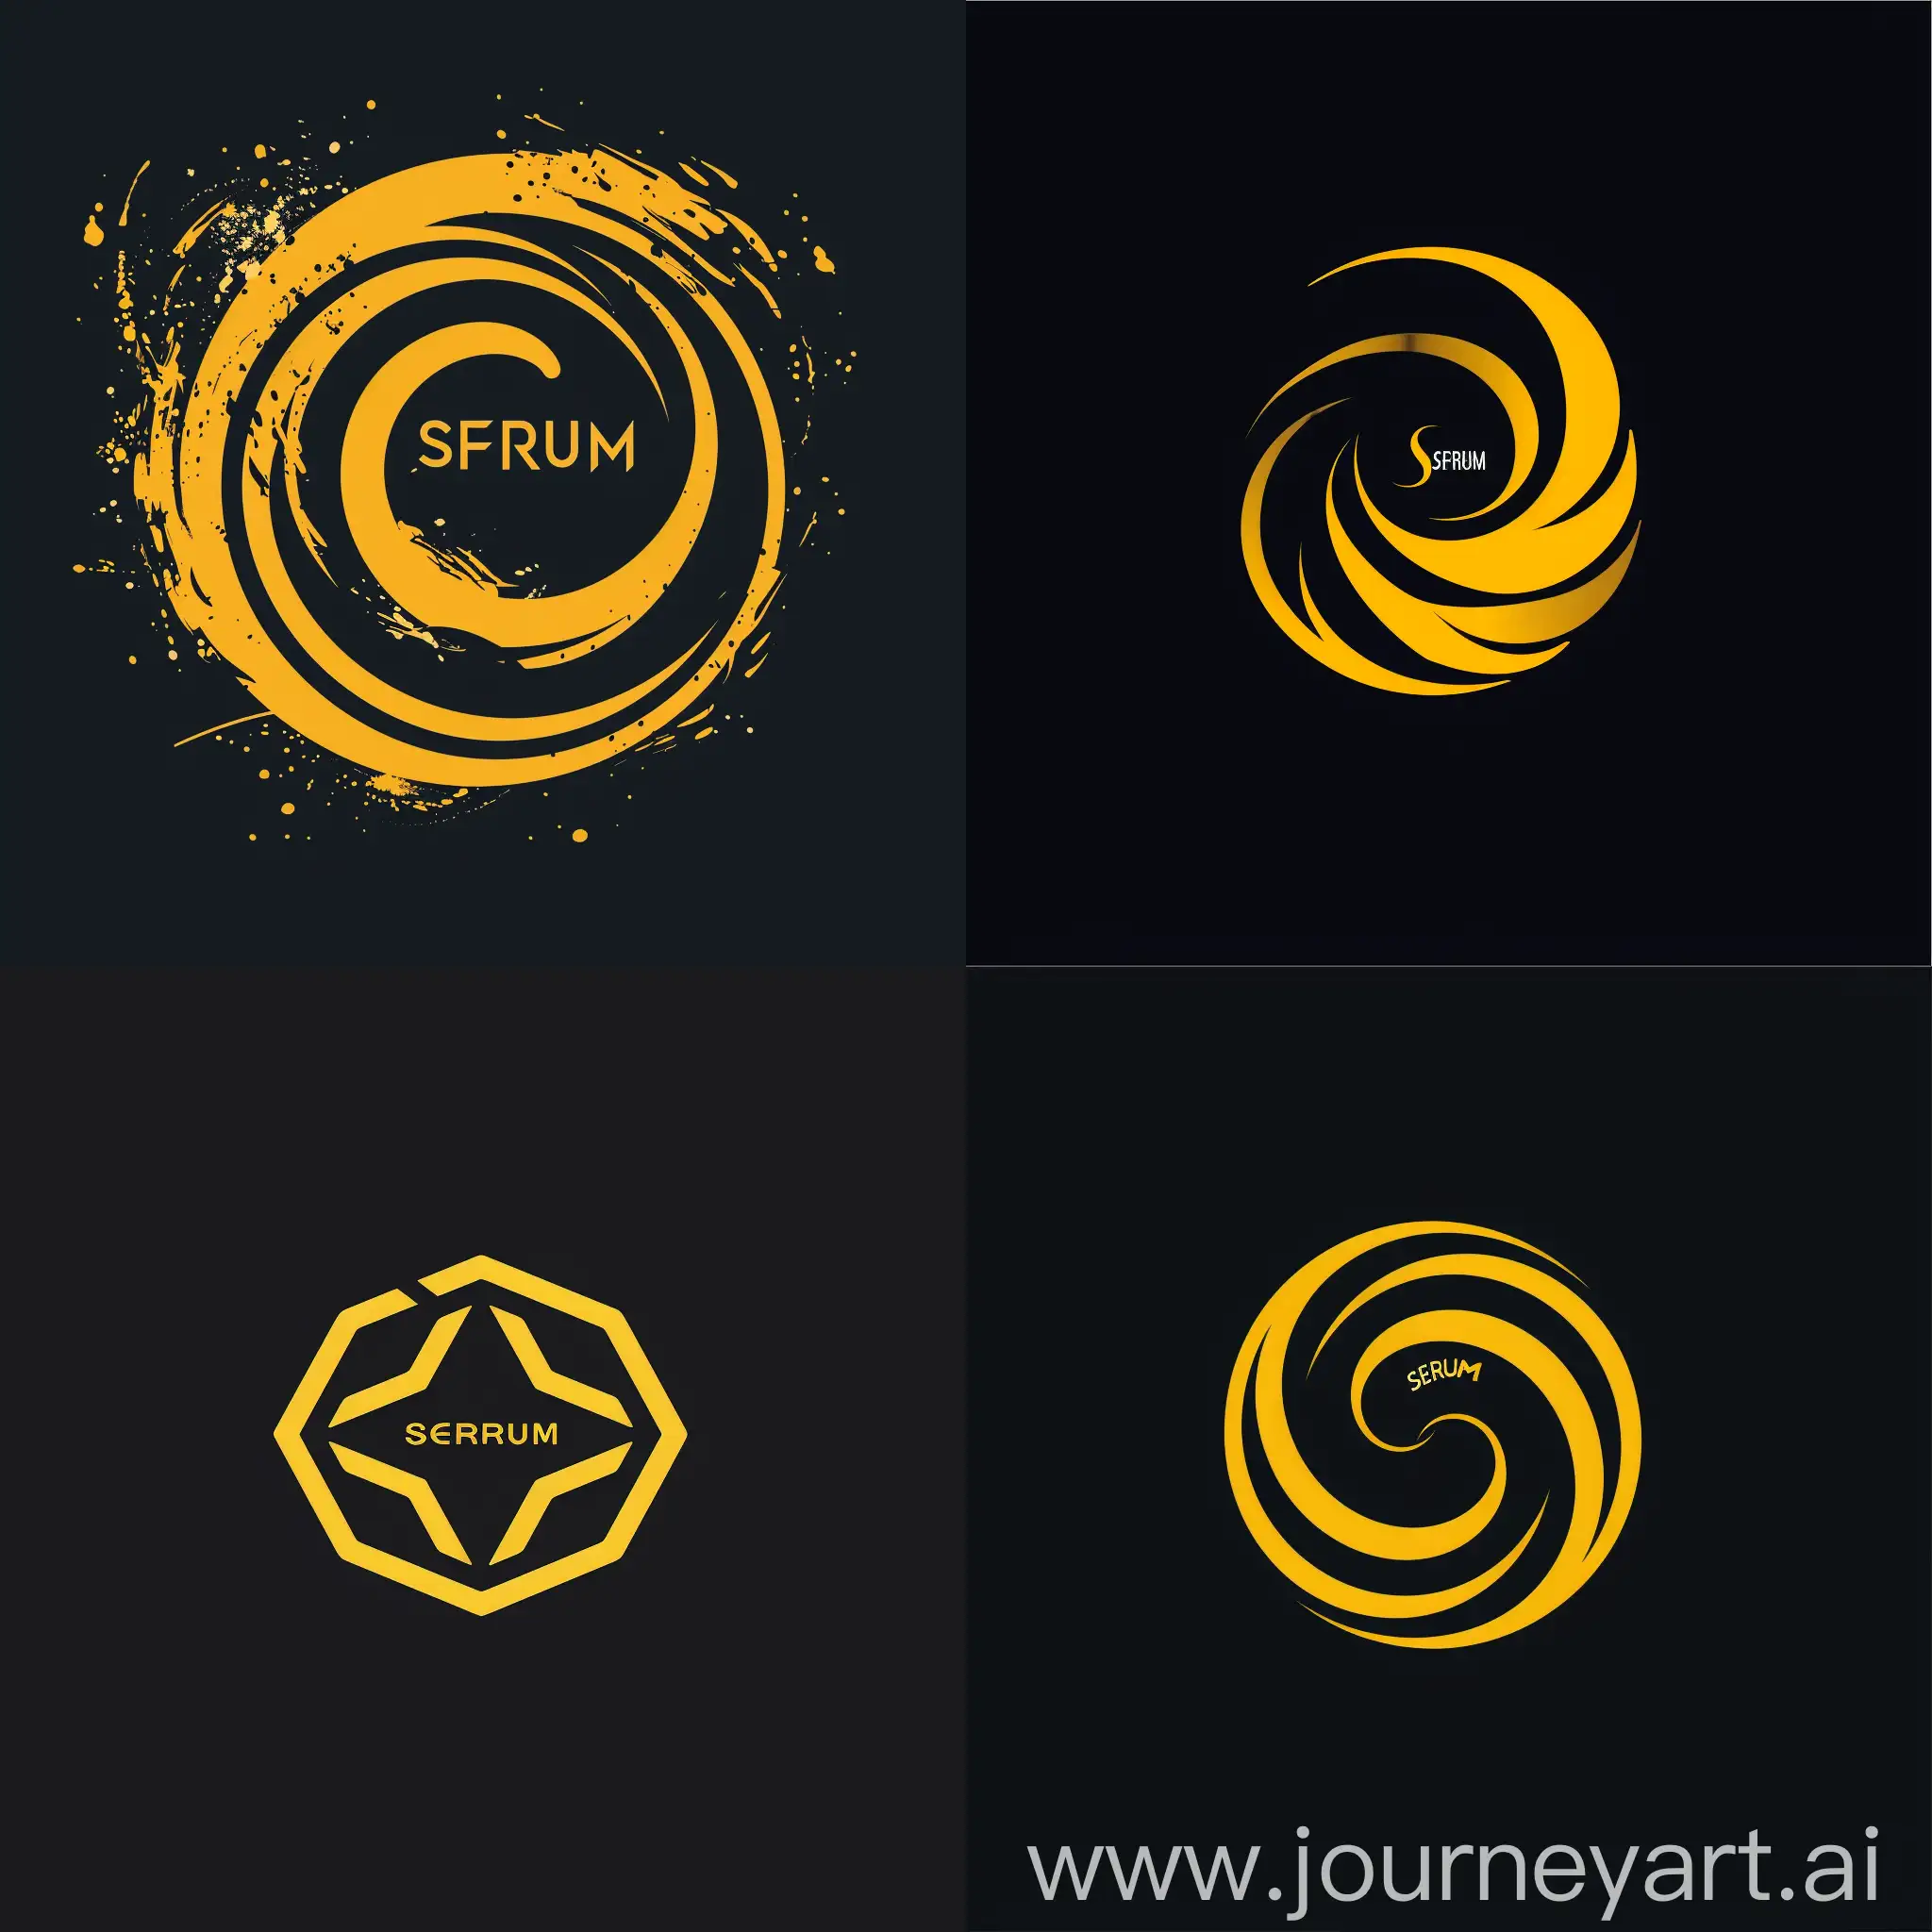 Un logo para un centro de entrenamiento que se llame Sferum de colores amarillo y negro